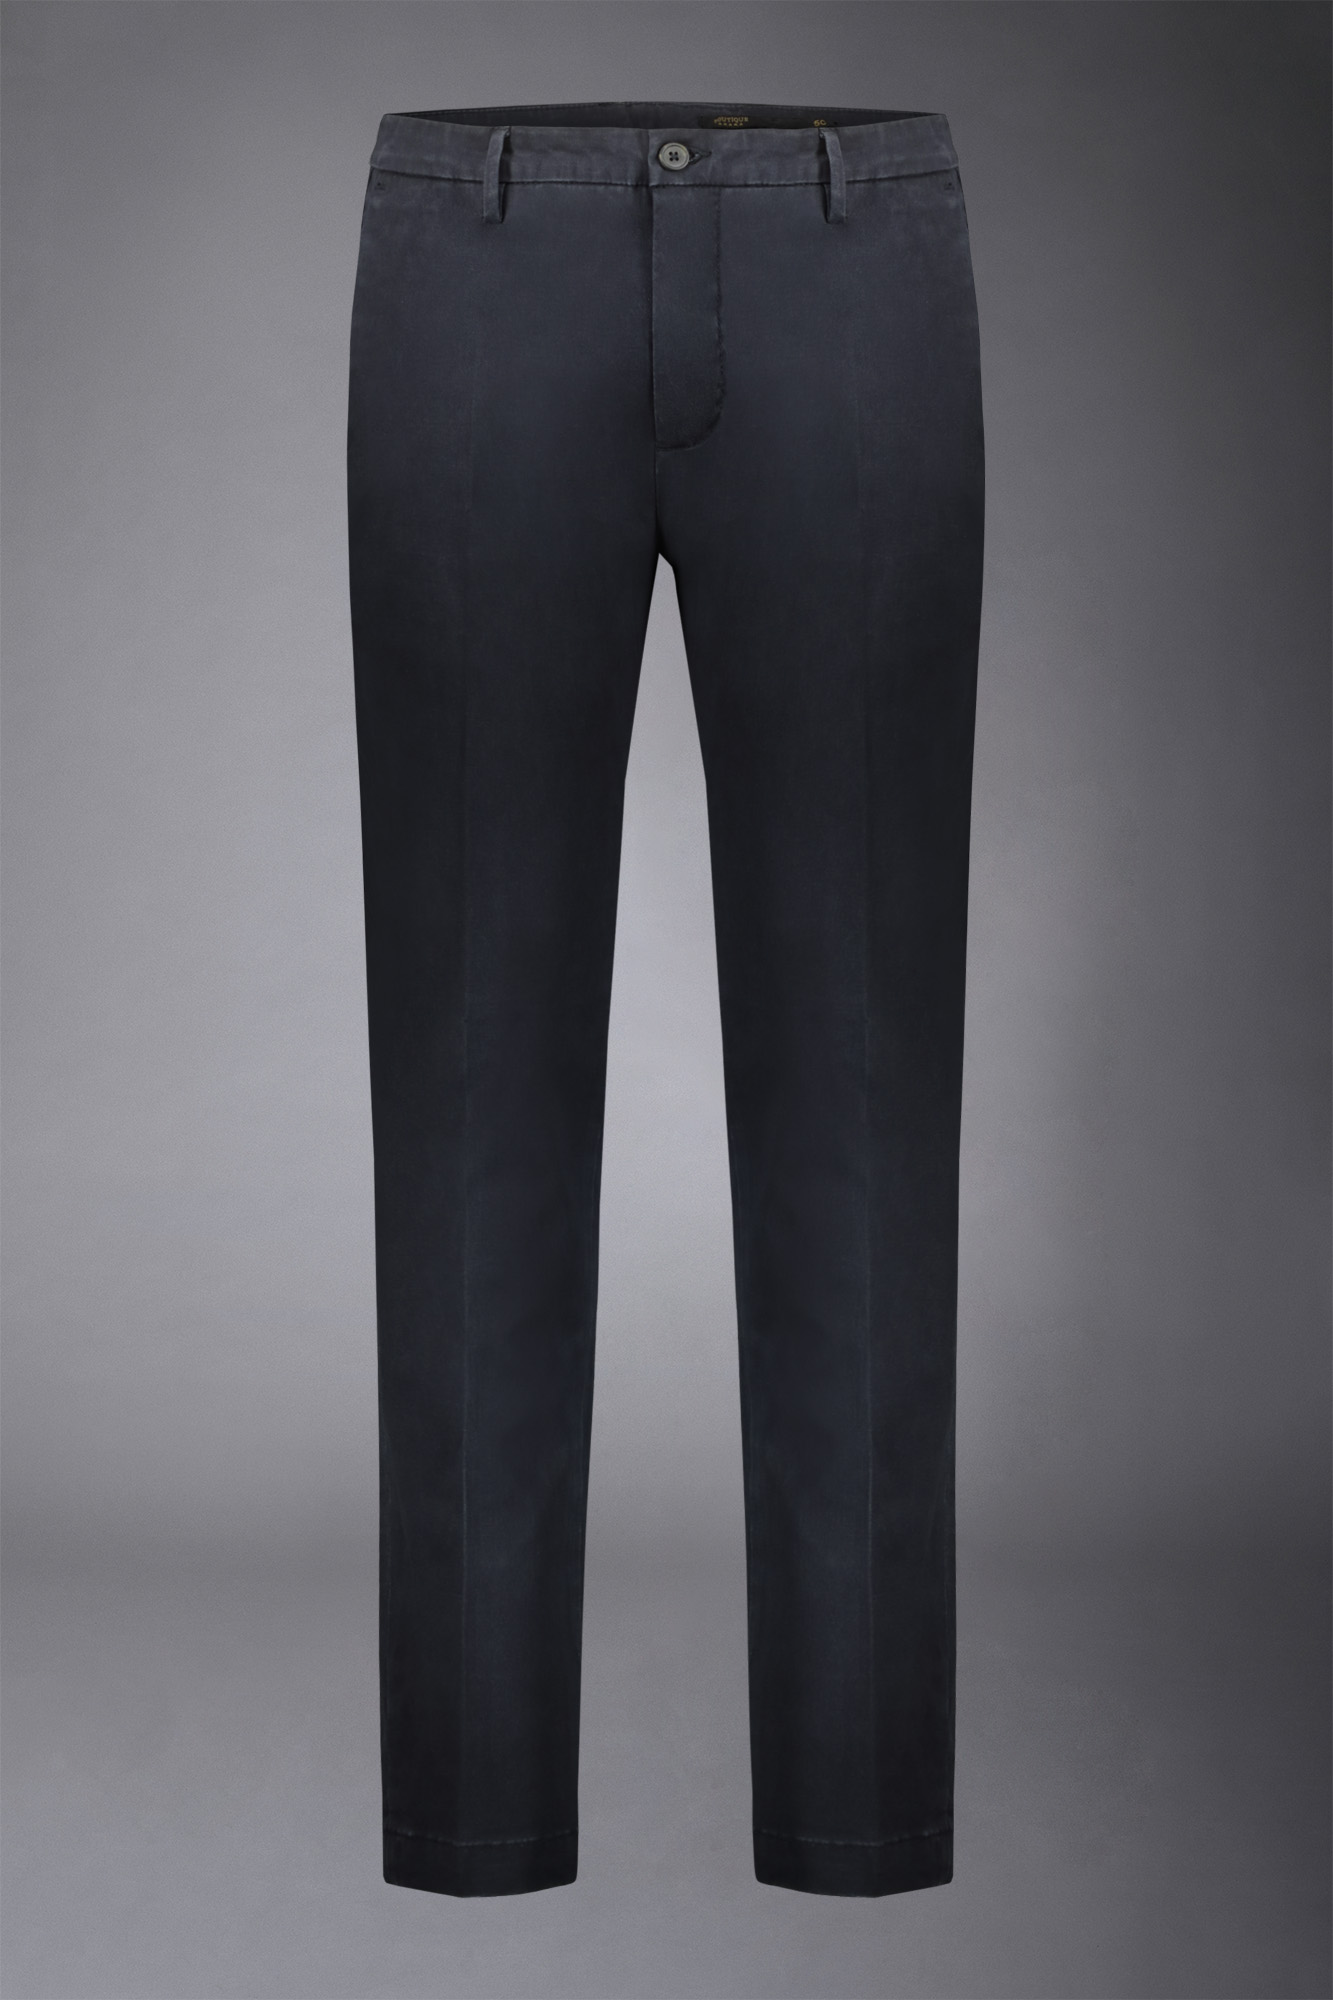 Pantalone chino classico regular fit tessuto twill elasticizzato